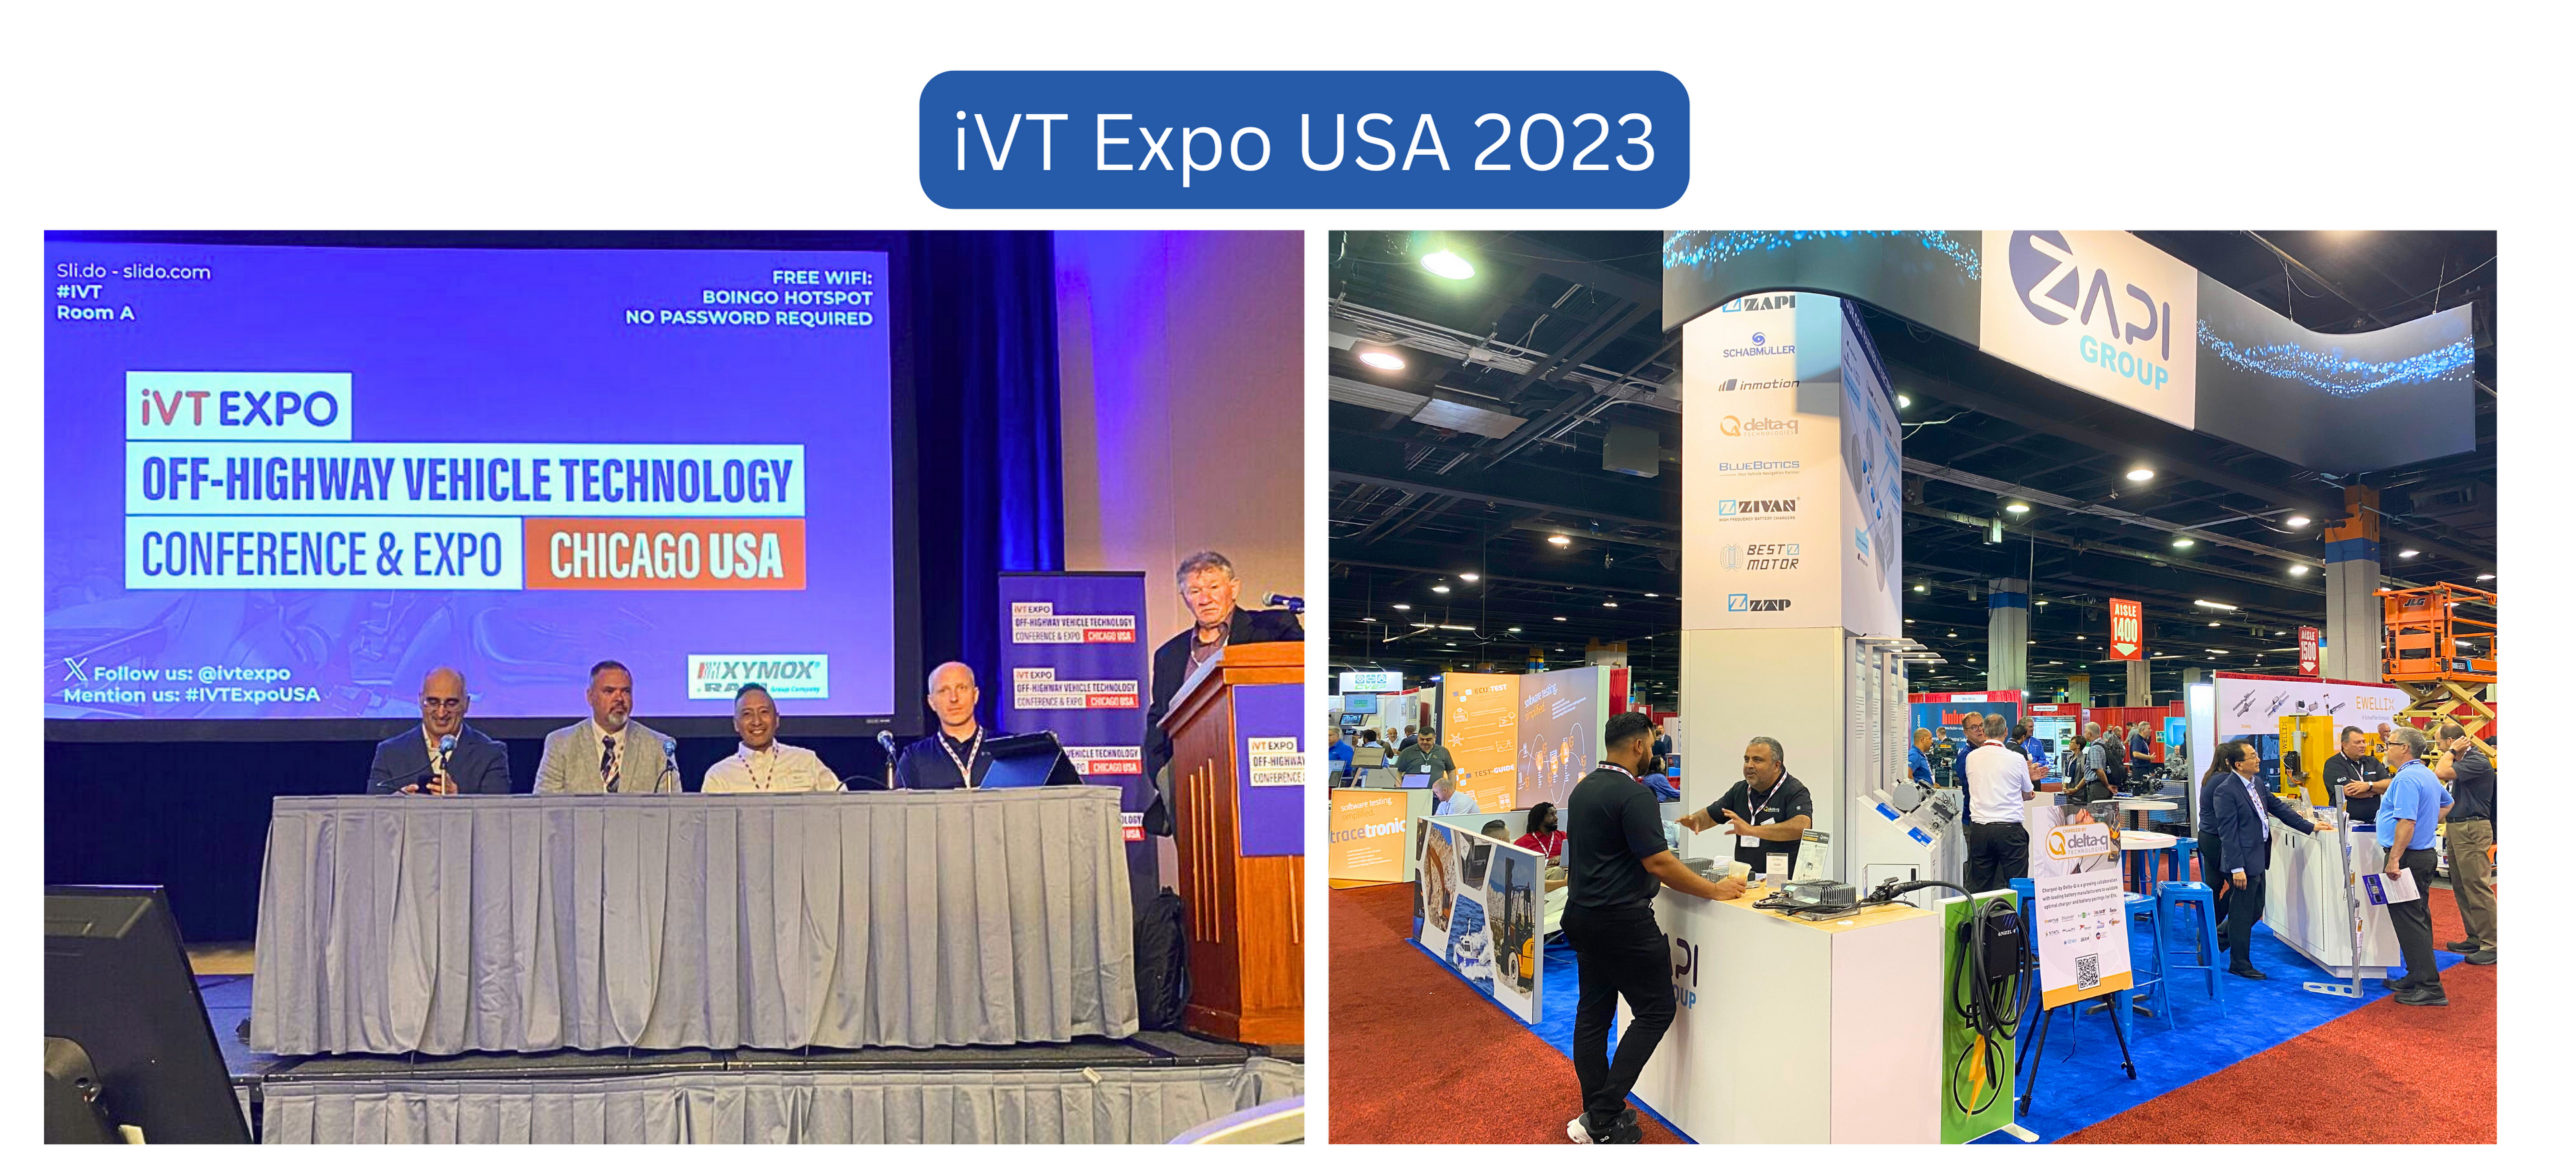 iVT Expo USA 2023 Recap